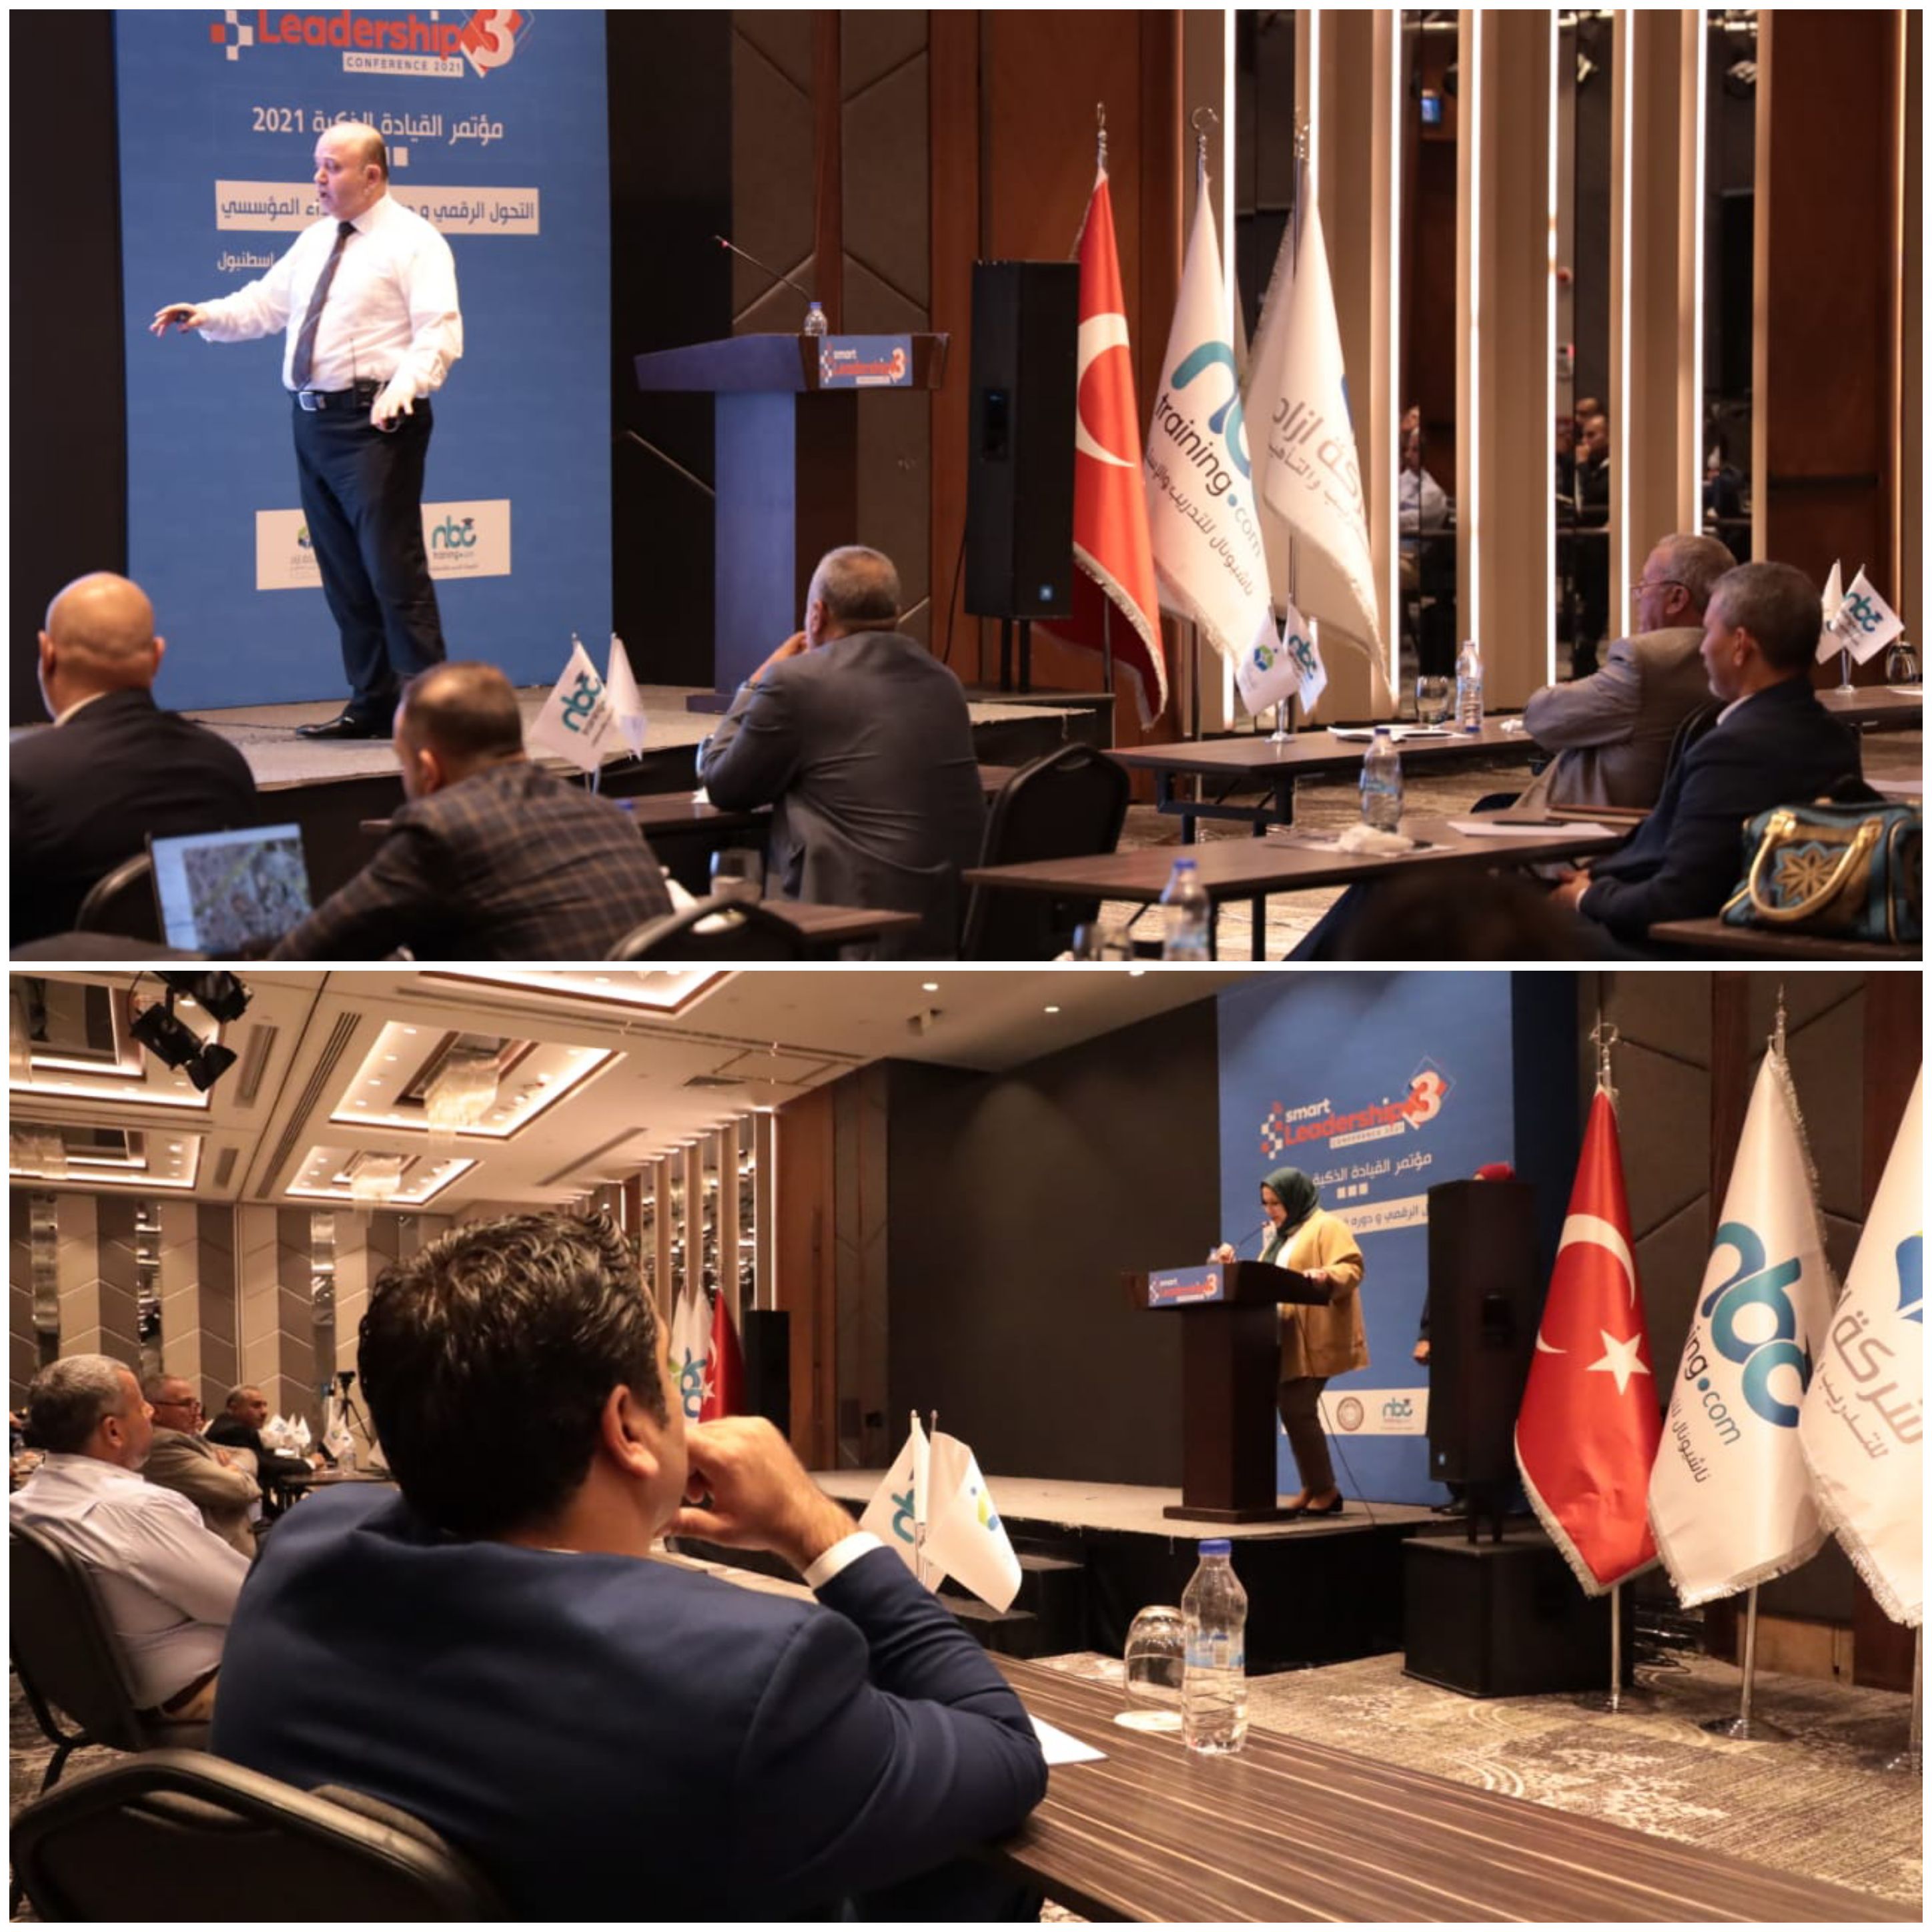 القيادة الذكية 2021م يختتم في اسطنبول بتوصية نمذجة مؤتمر التحول الرقمي  في بلدان الشرق الأوسط ..